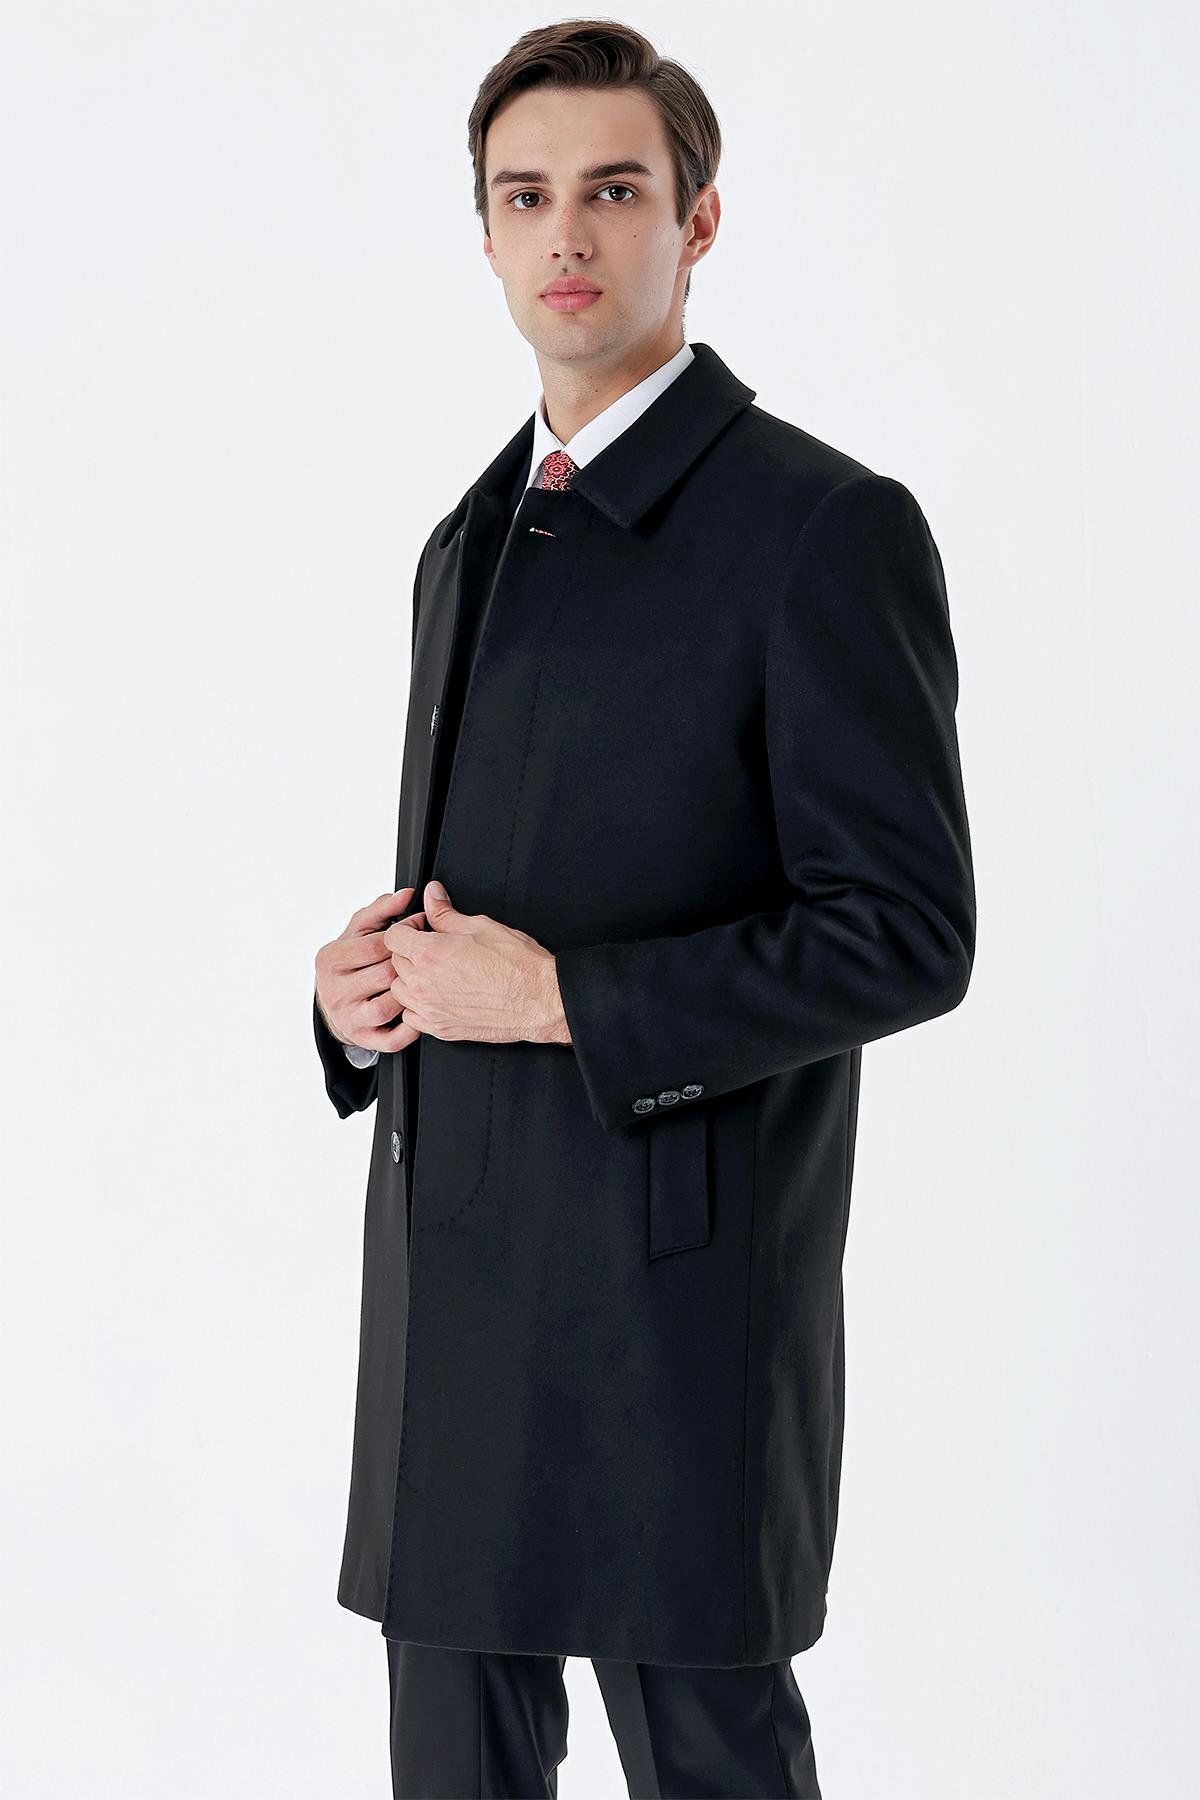 İmza Siyah Kaşe Berberi Yaka Yırtmaçlı Comfort Fit Rahat Kesim Klasik Palto 1005235252